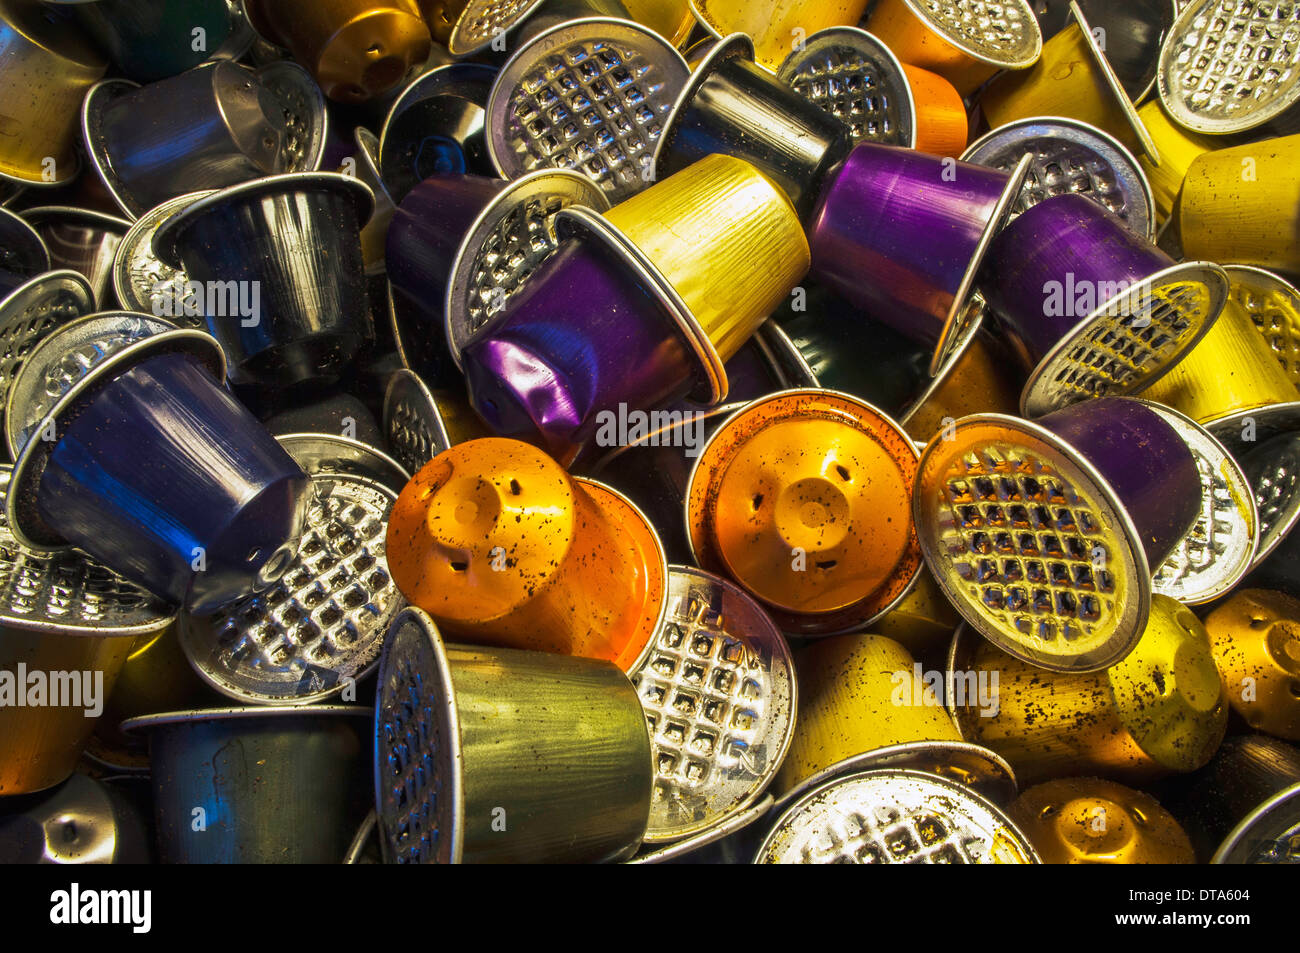 Le recyclage, les déchets, l'aluminium, Al, consommation, utilisation des capsules  Nespresso, café Photo Stock - Alamy